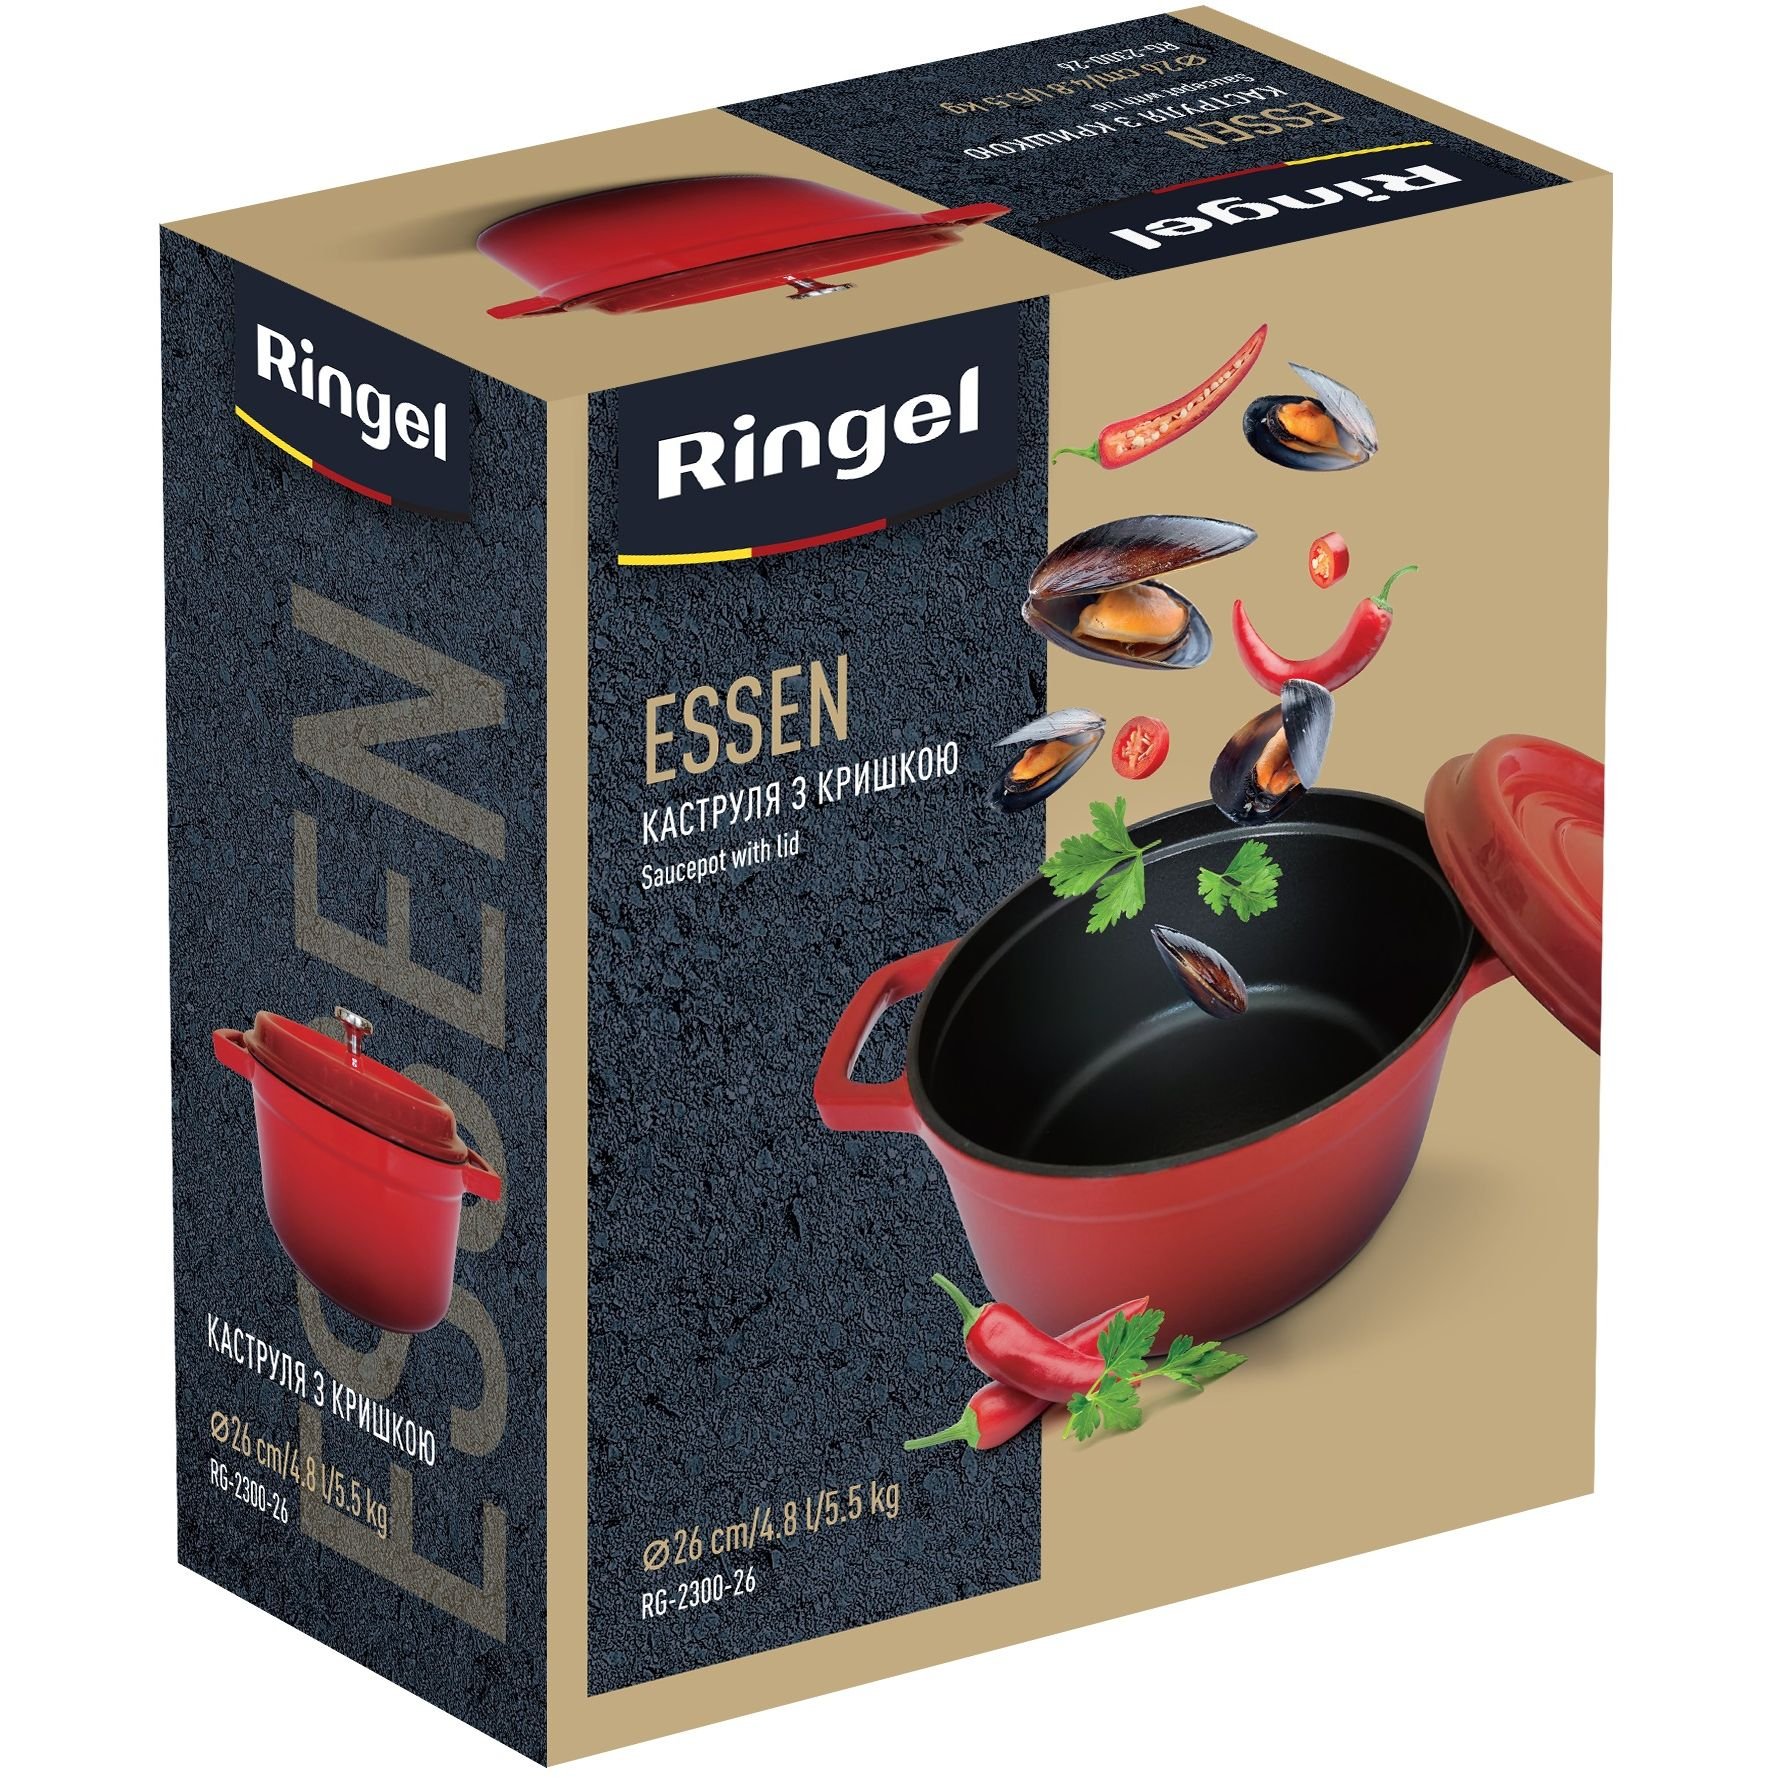 Каструля Ringel Essen, з кришкою, 26 см, 4,8 л, червона (RG-2300-26) - фото 4